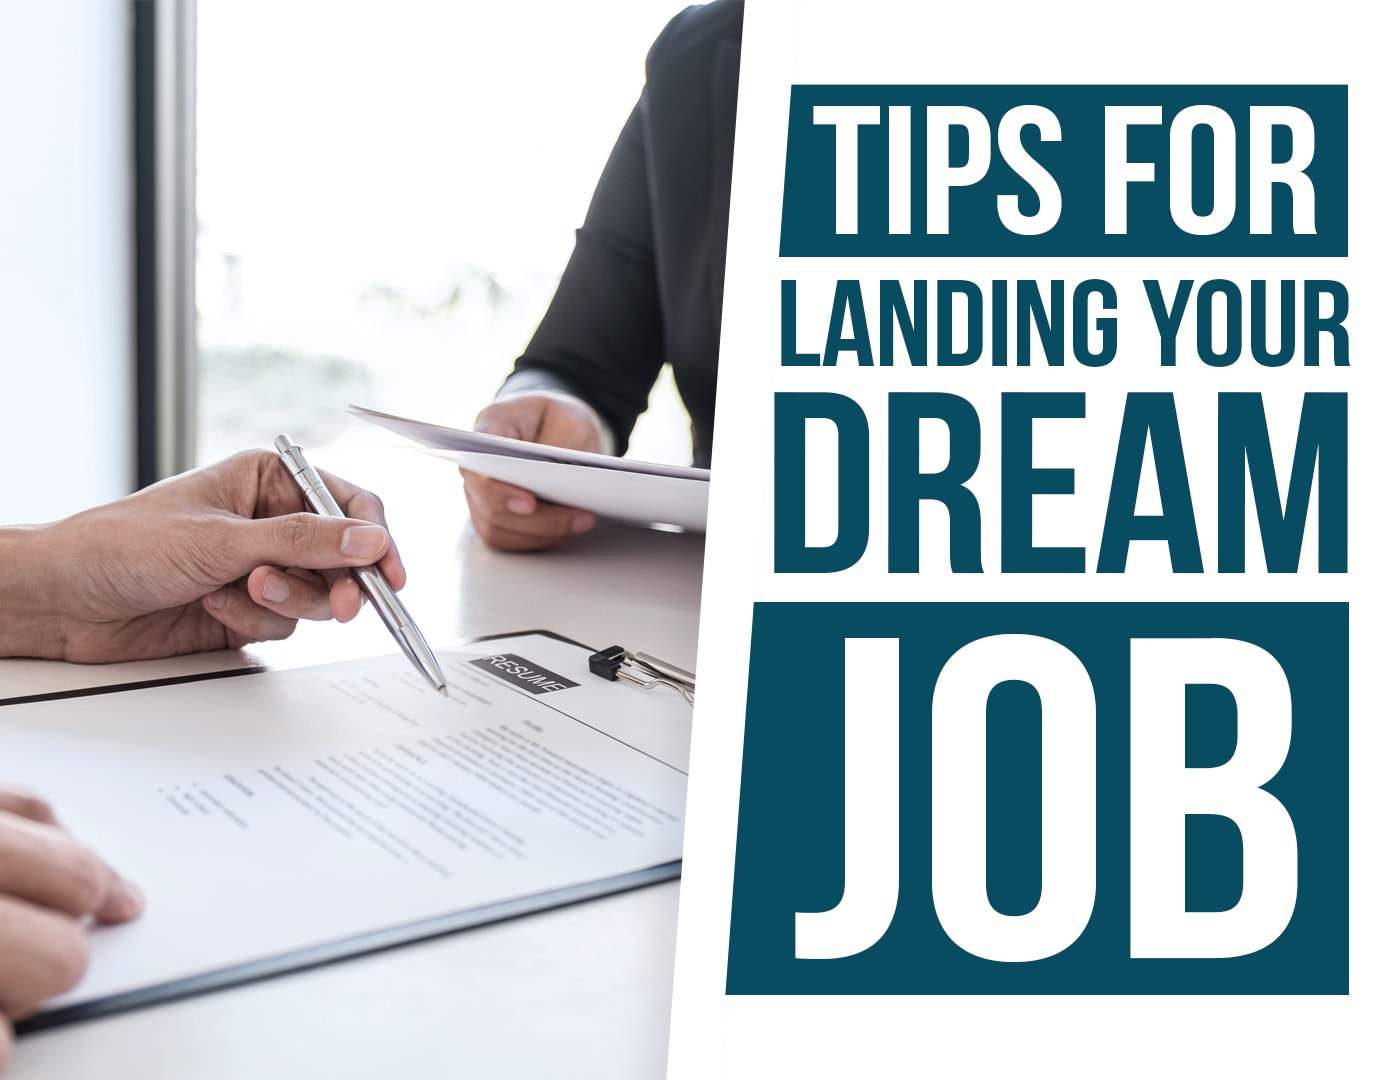 Tips for Landing Your Dream Job